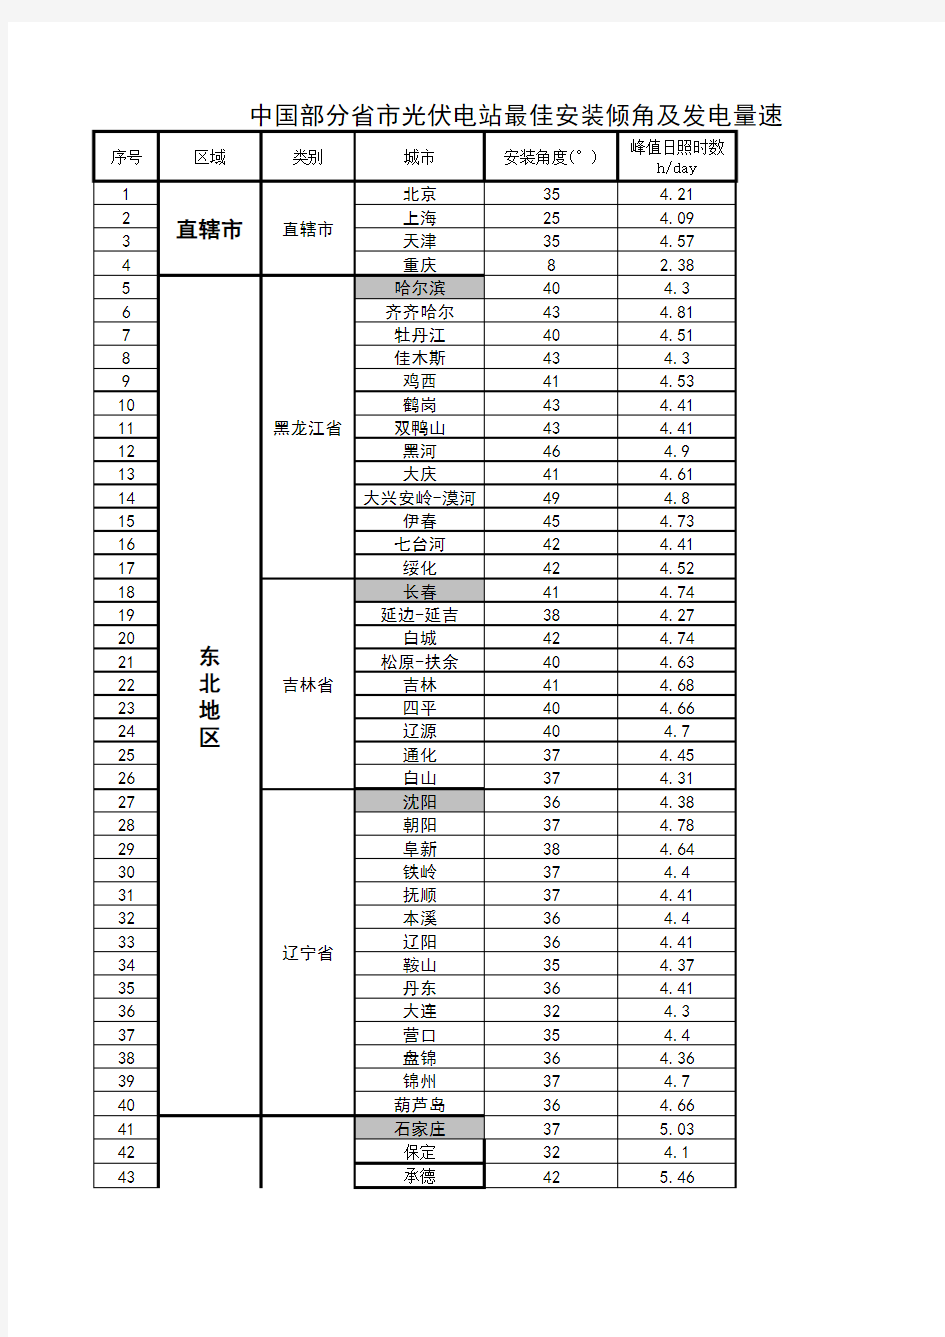 8.4中国各省市光伏电站最佳安装倾角及发电量速查表